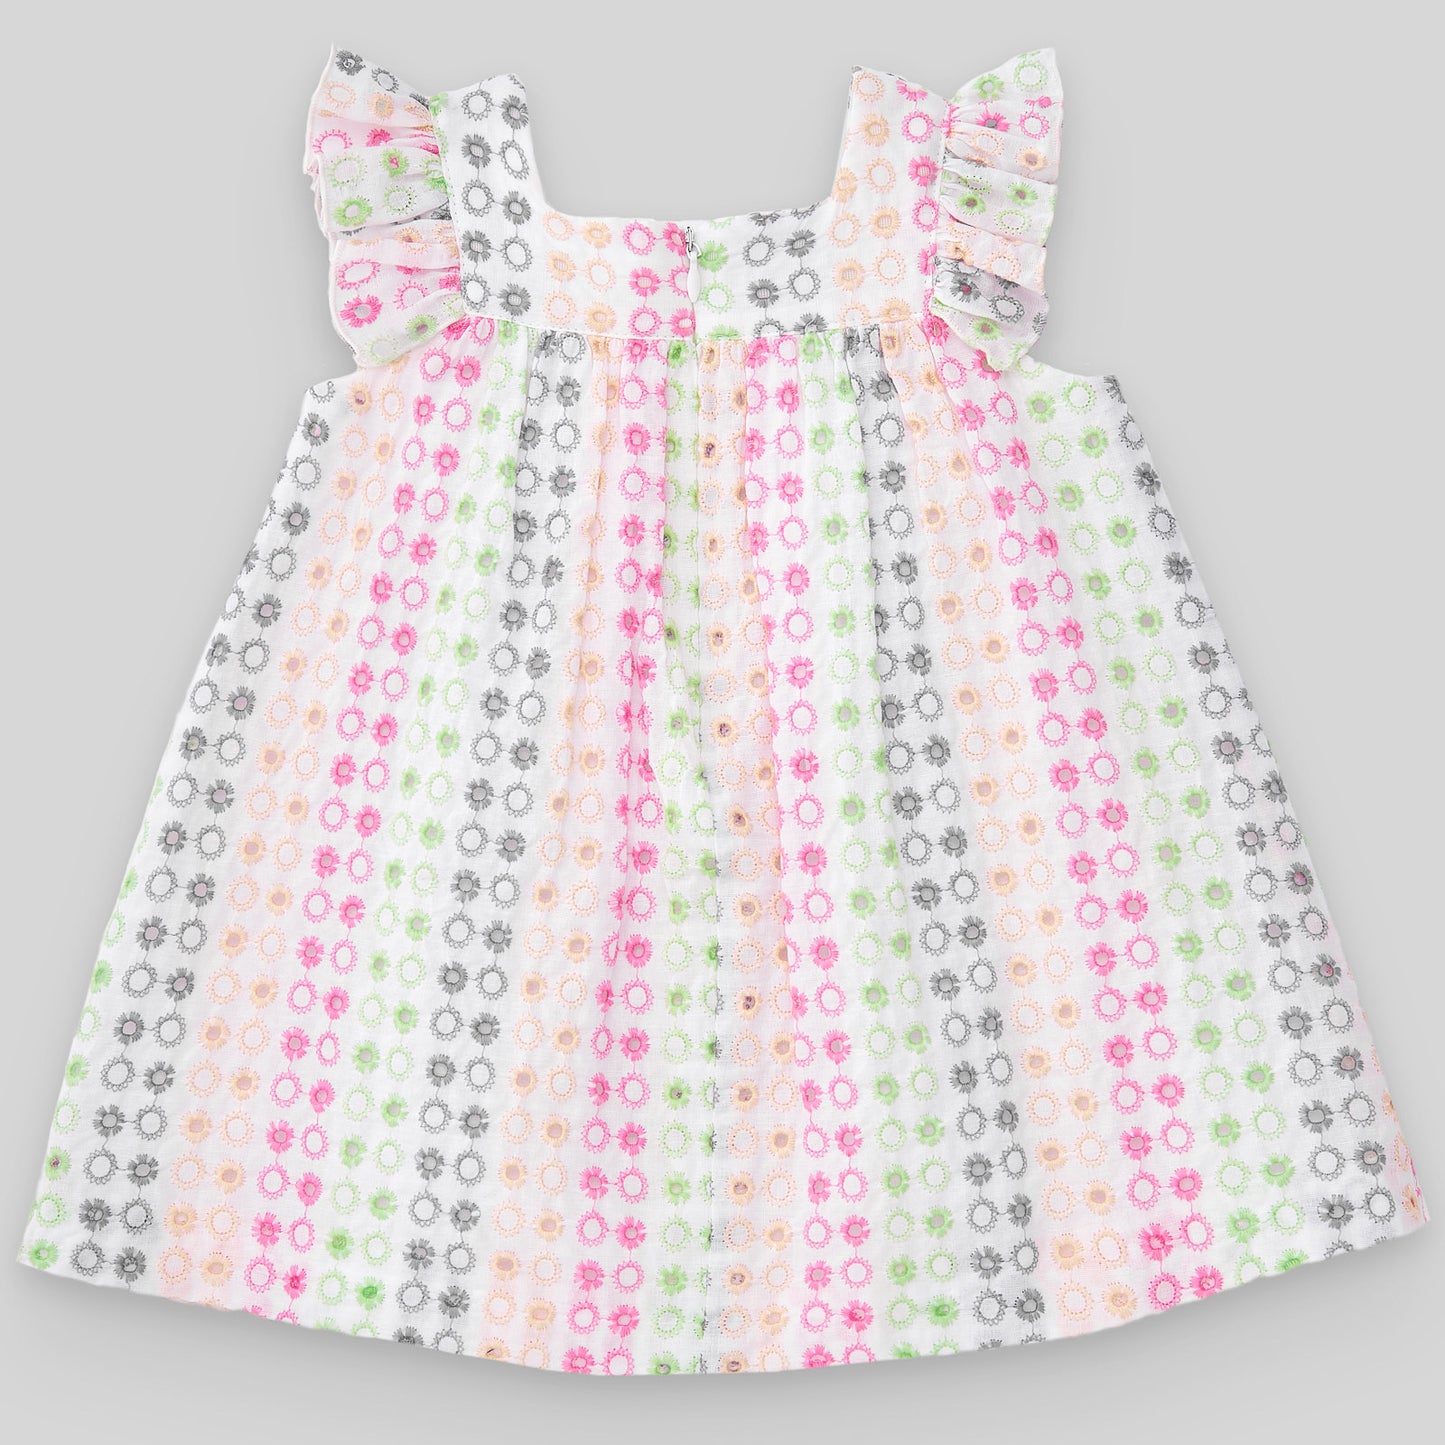 PAZ RODRIGUEZ Multicolored Cotton Dress